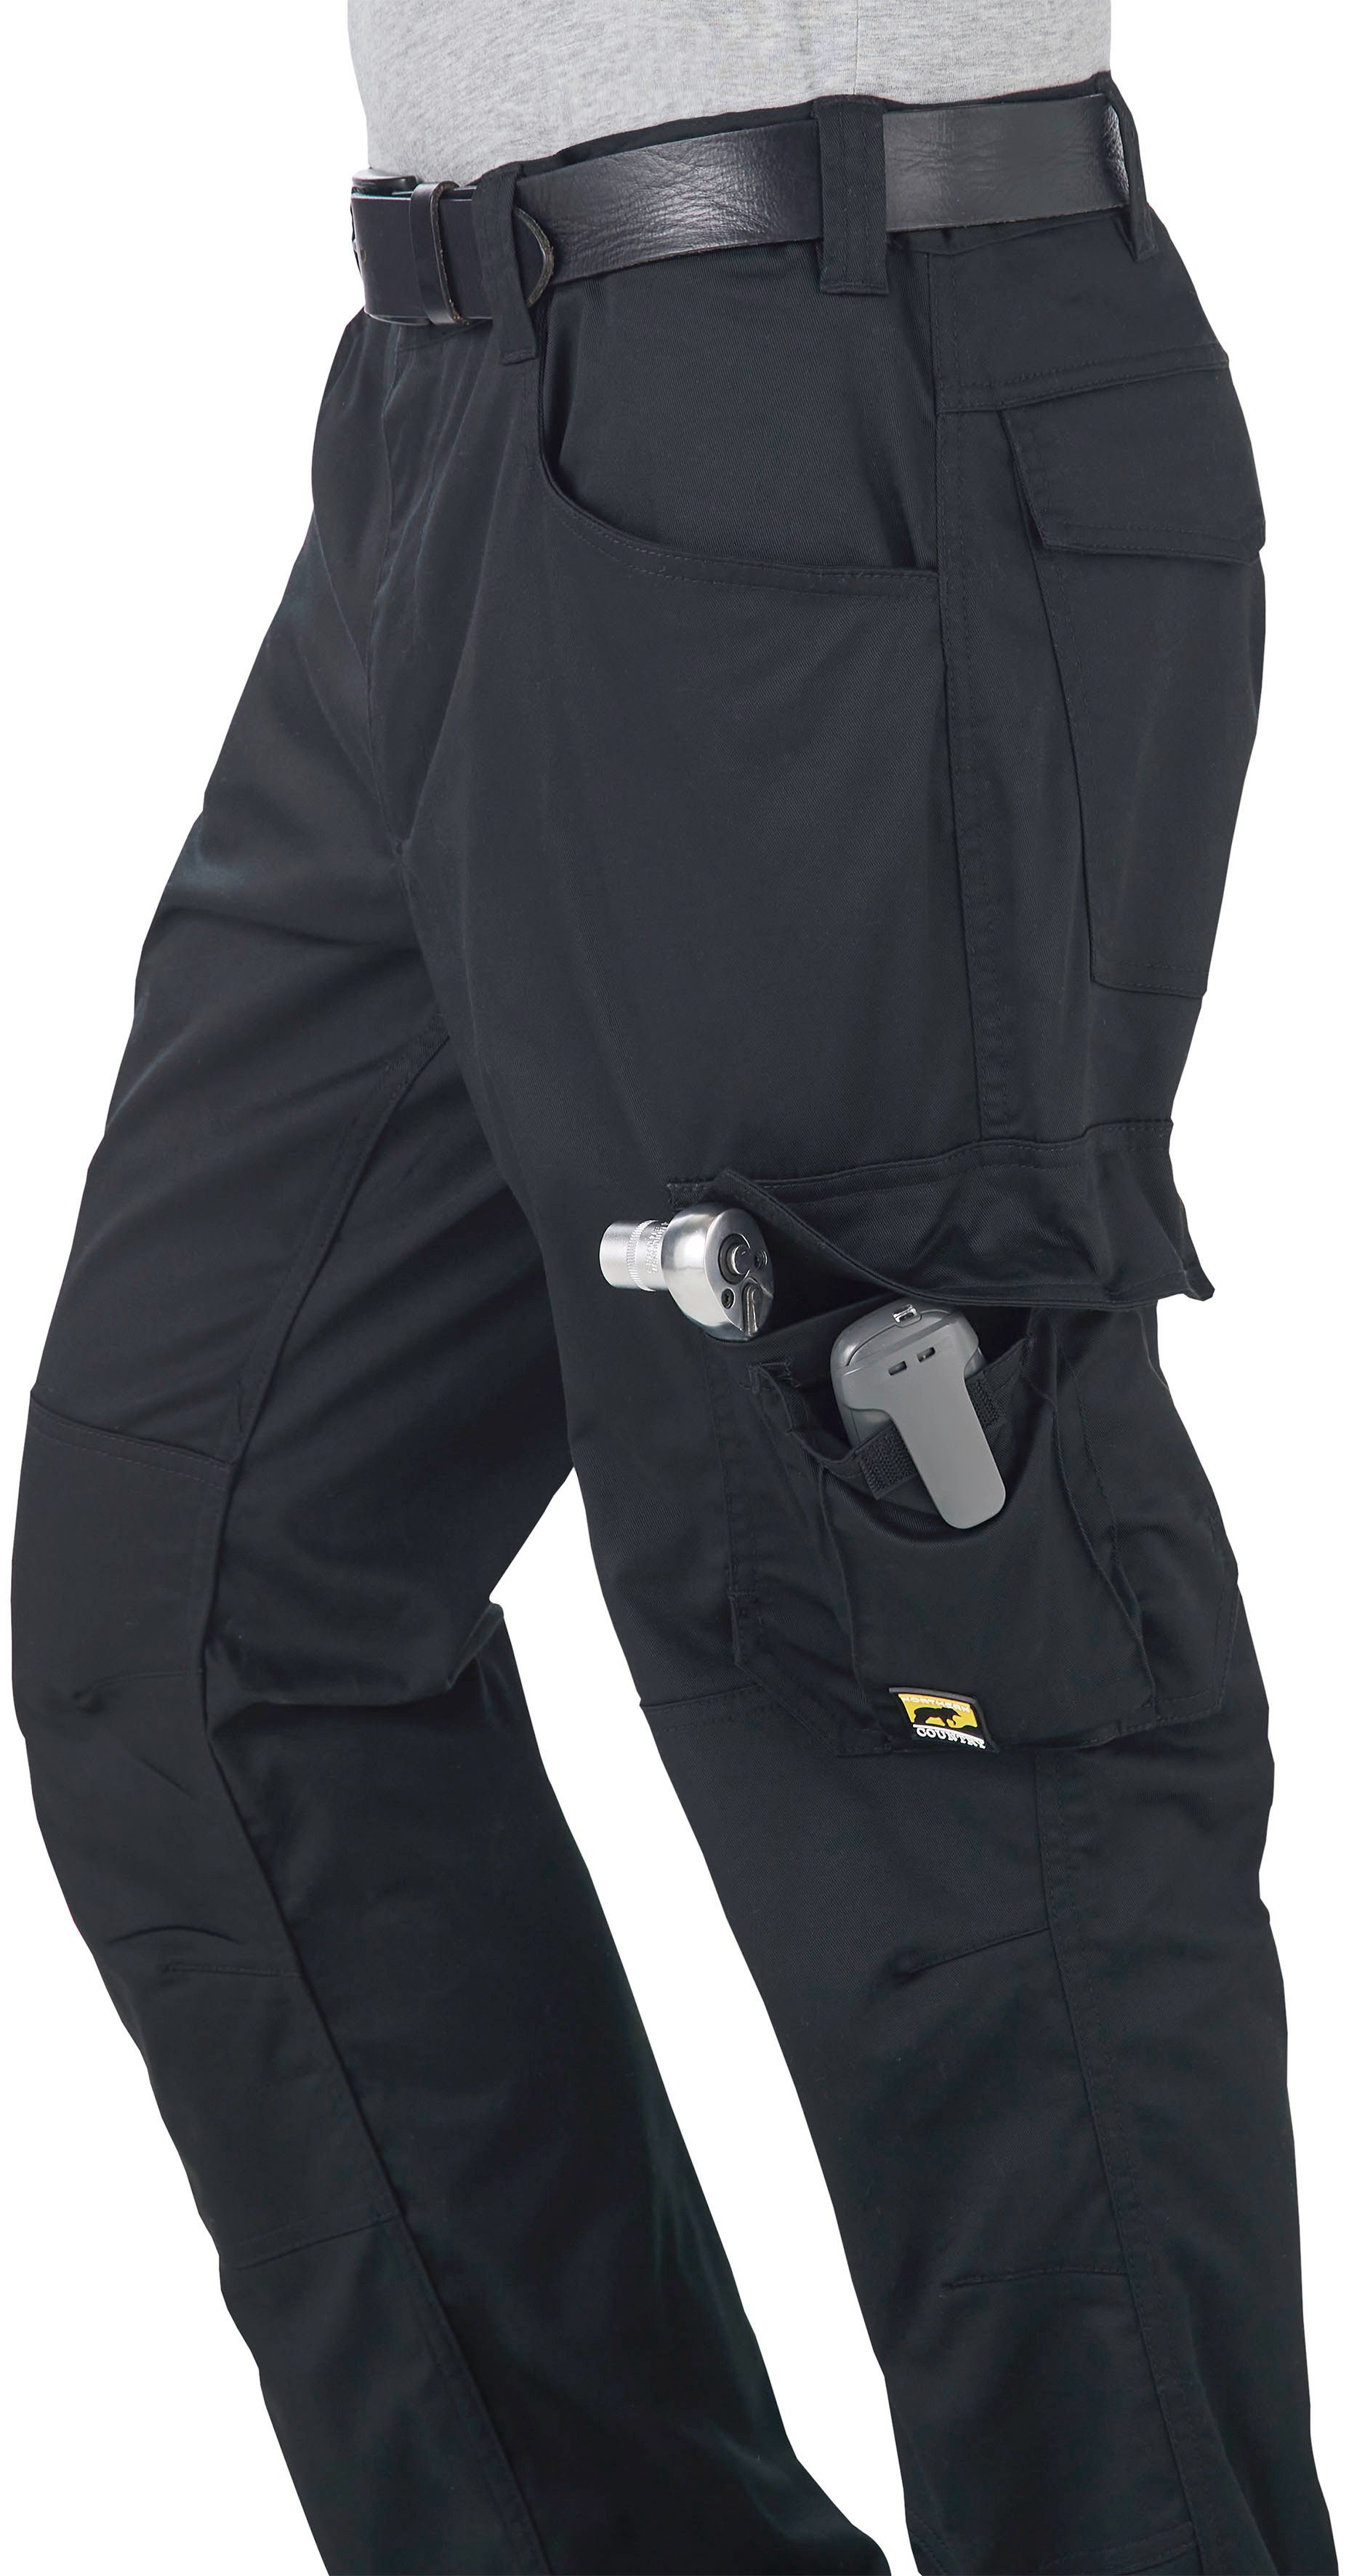 Verlängerung Taschen flex 7 Materialmix: Northern um bequem weich, light Hose durch 3cm, Country + leicht der (einfache flexibel, Kniebesatz) und Arbeitshose ergonomisch